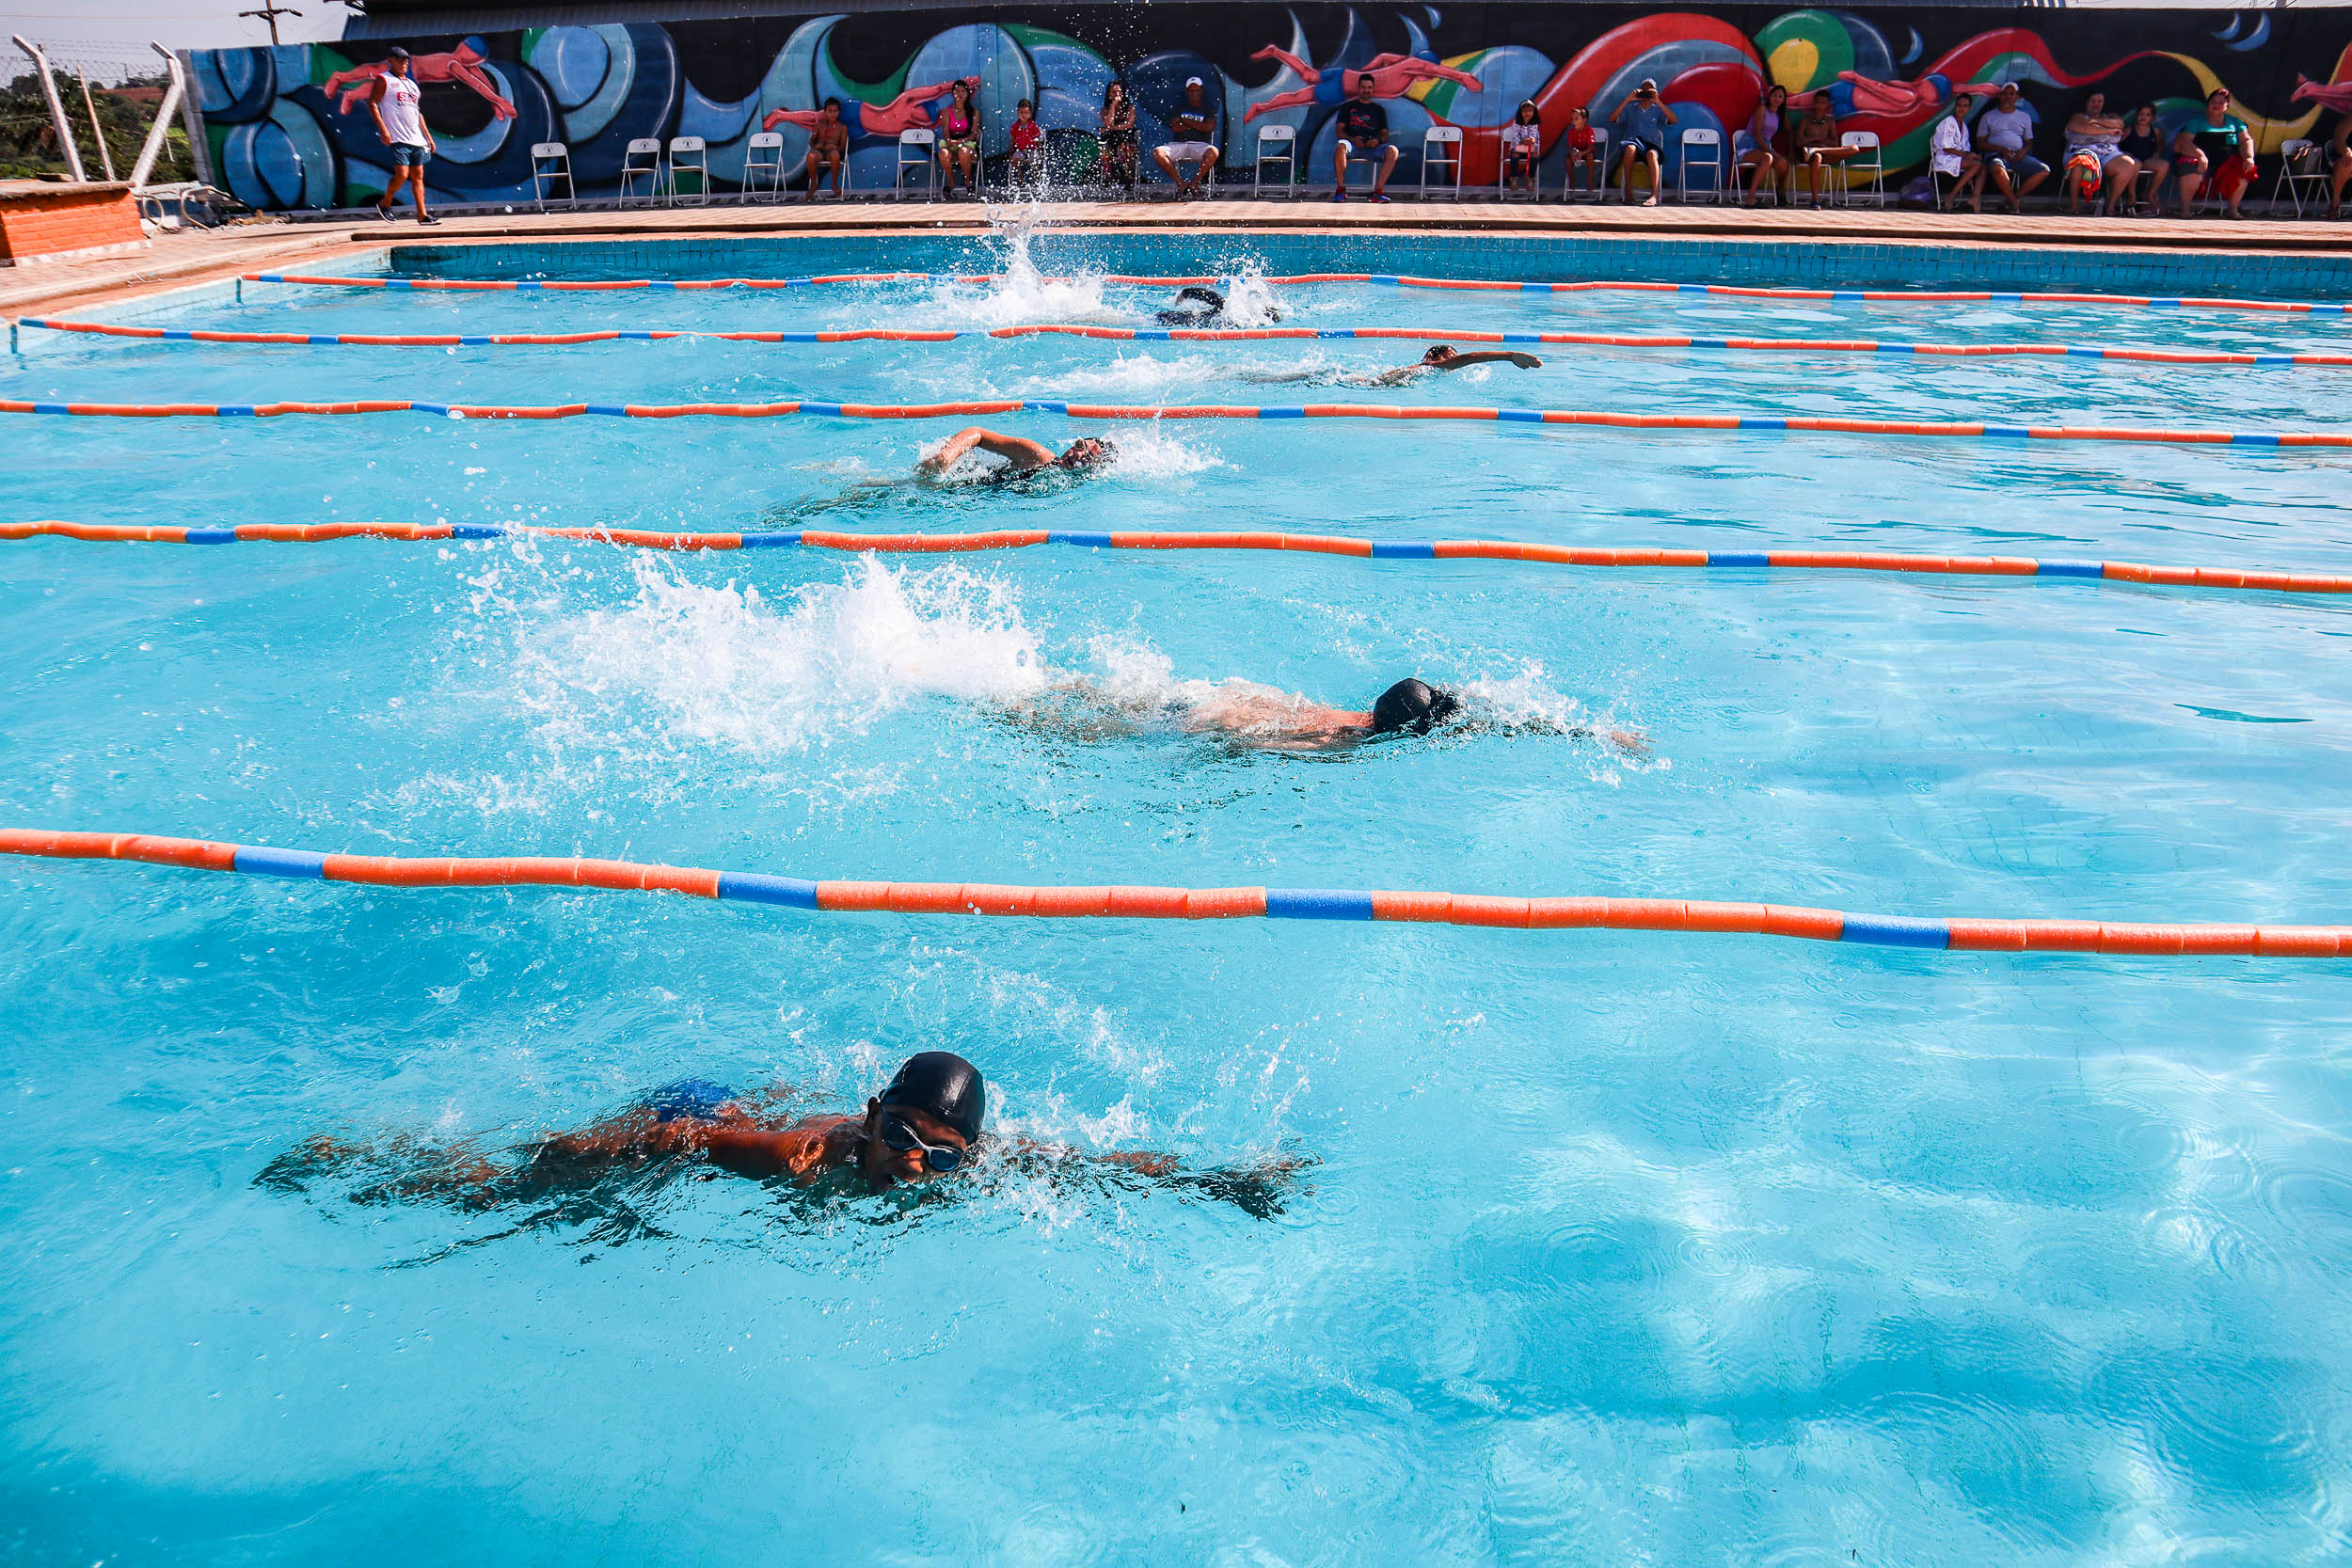 Alunos participam de competição de natação na Piscina Pública de Urupês. Foto: Thomas Volpato Moutropoulos / Prefeitura Municipal de Urupês